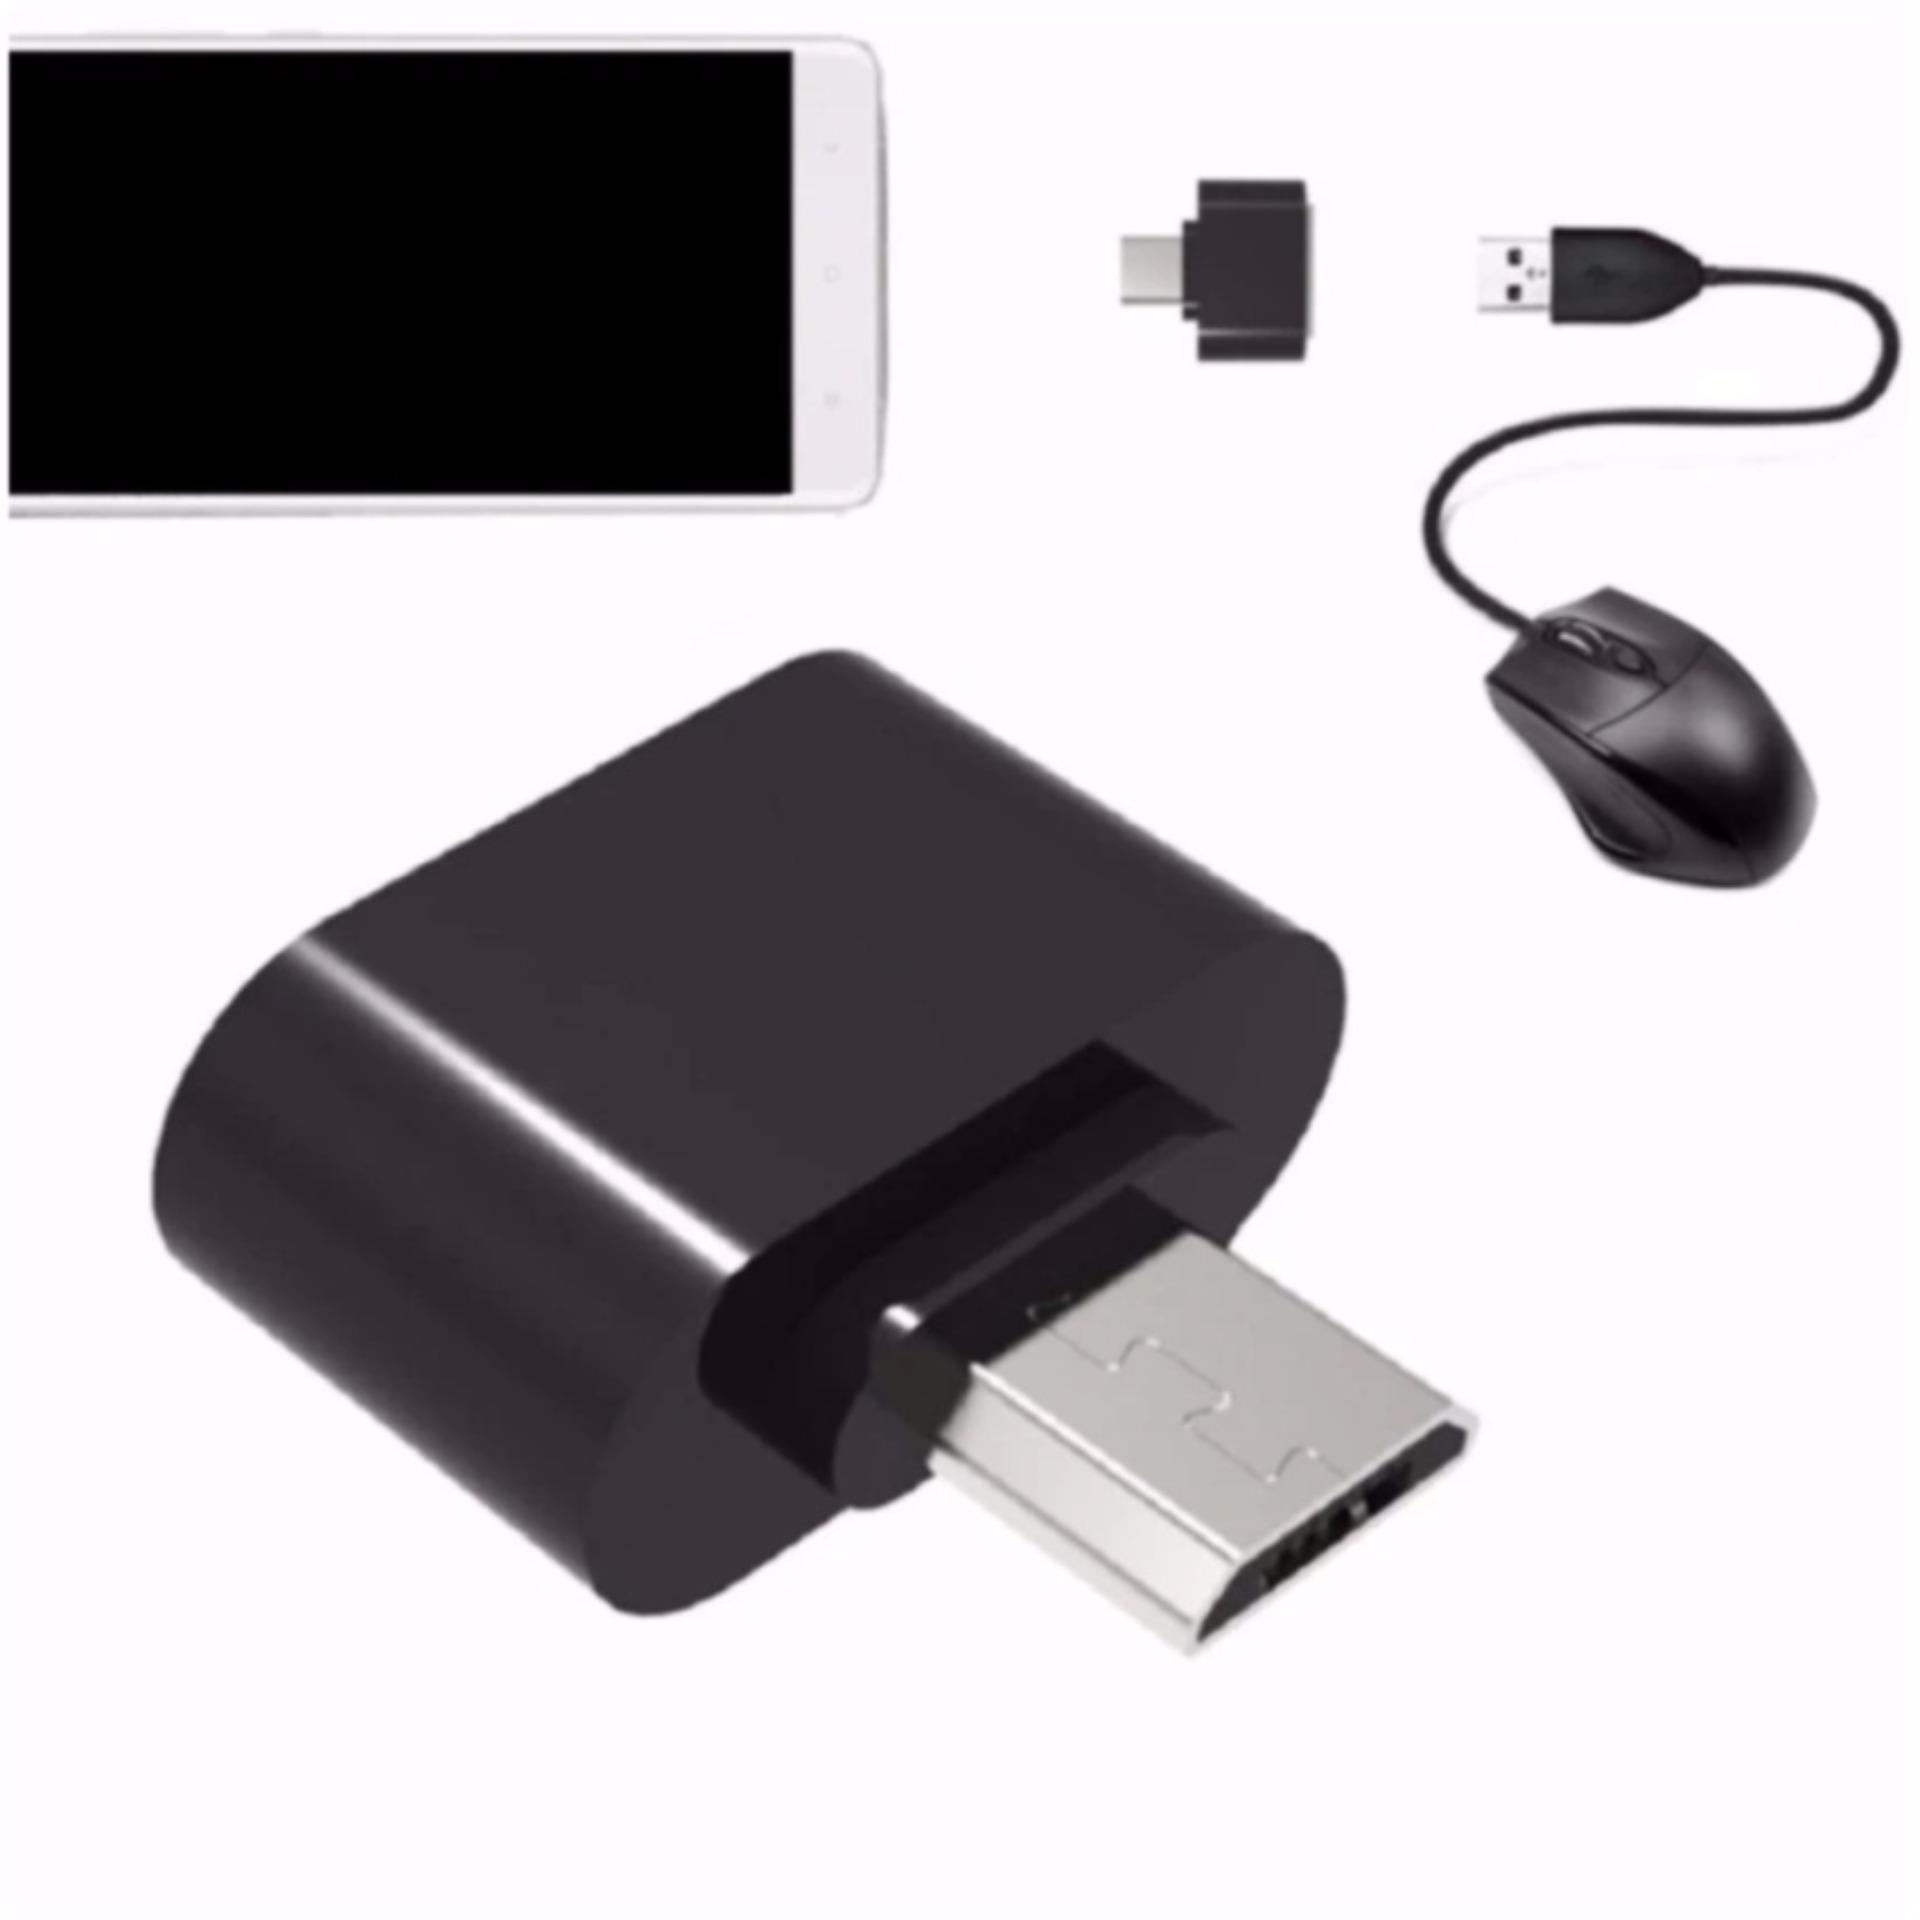 Bộ 2 Đầu chuyển Micro USB OTG cho máy tính bảng và smart phone (đen) - Hàng nhập khẩu